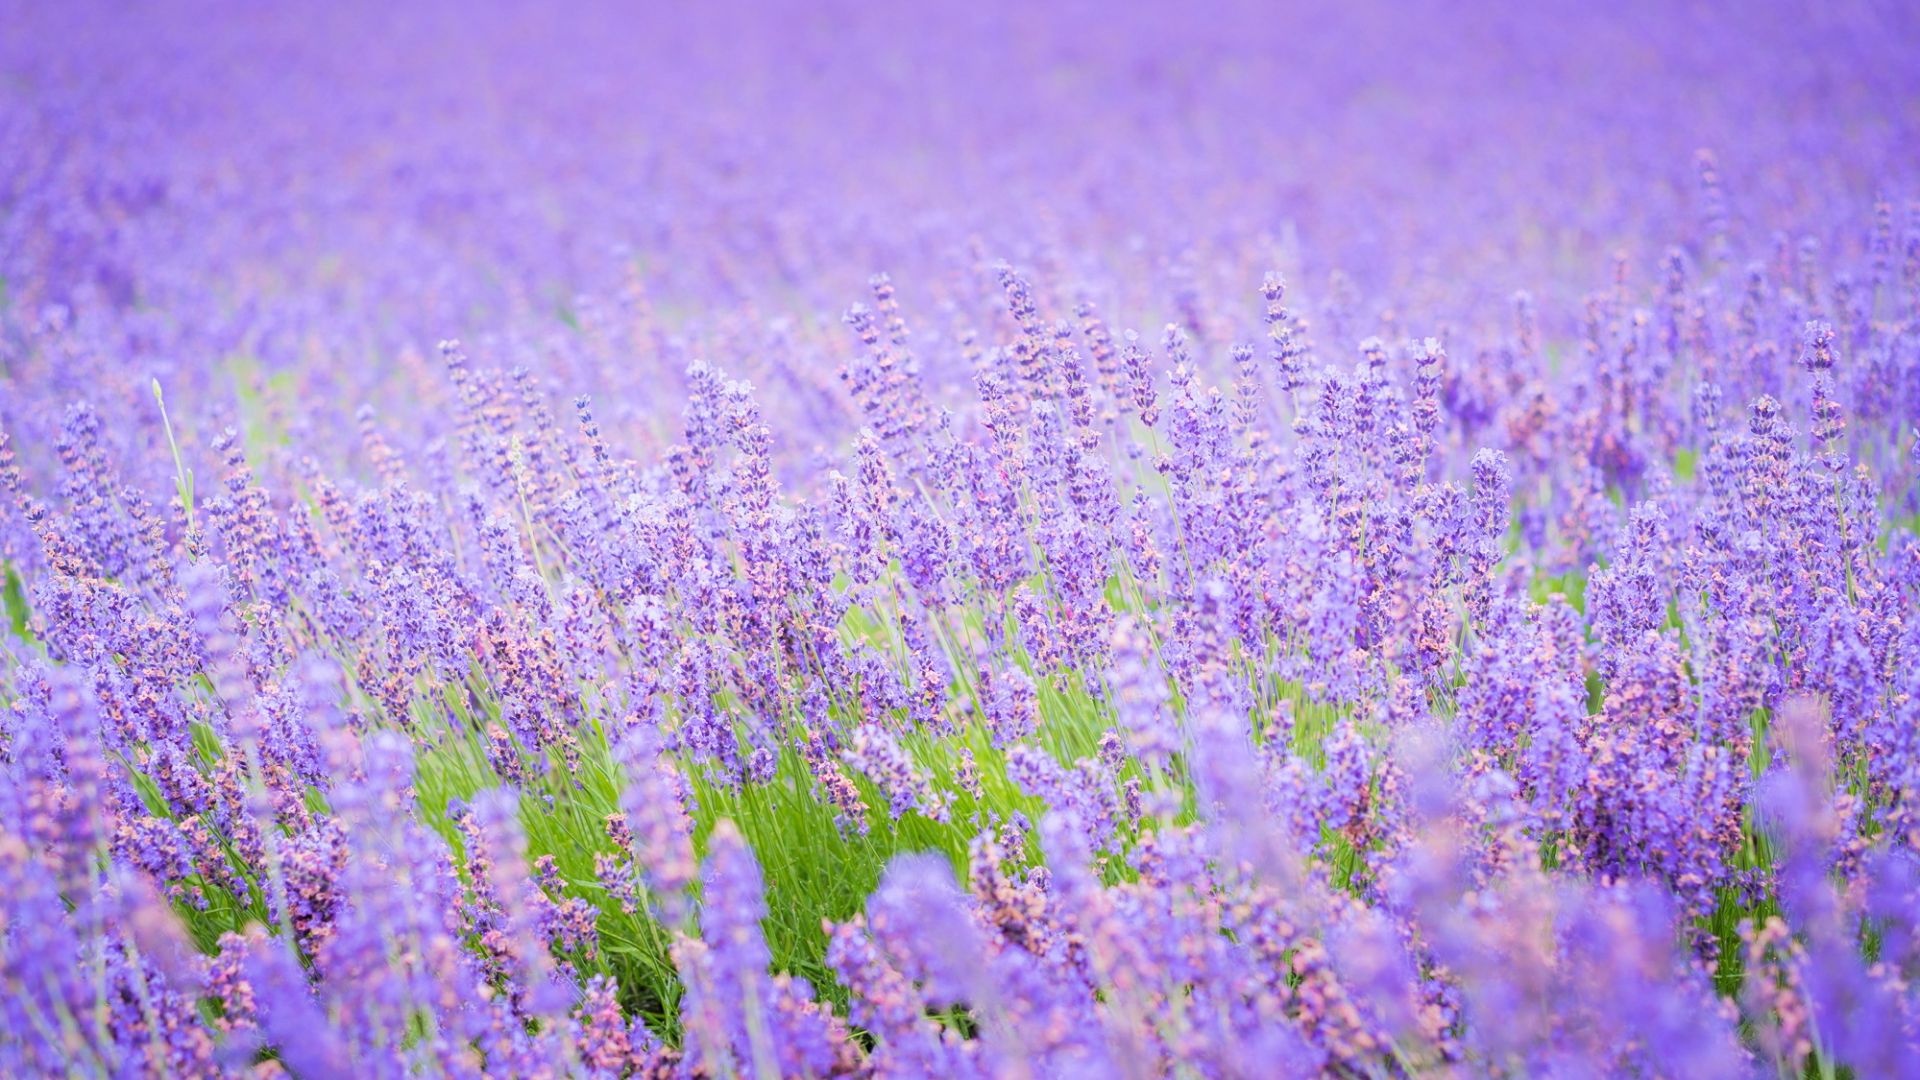 Flower Field: Lavender, Meadow, Flowering plant. 1920x1080 Full HD Wallpaper.